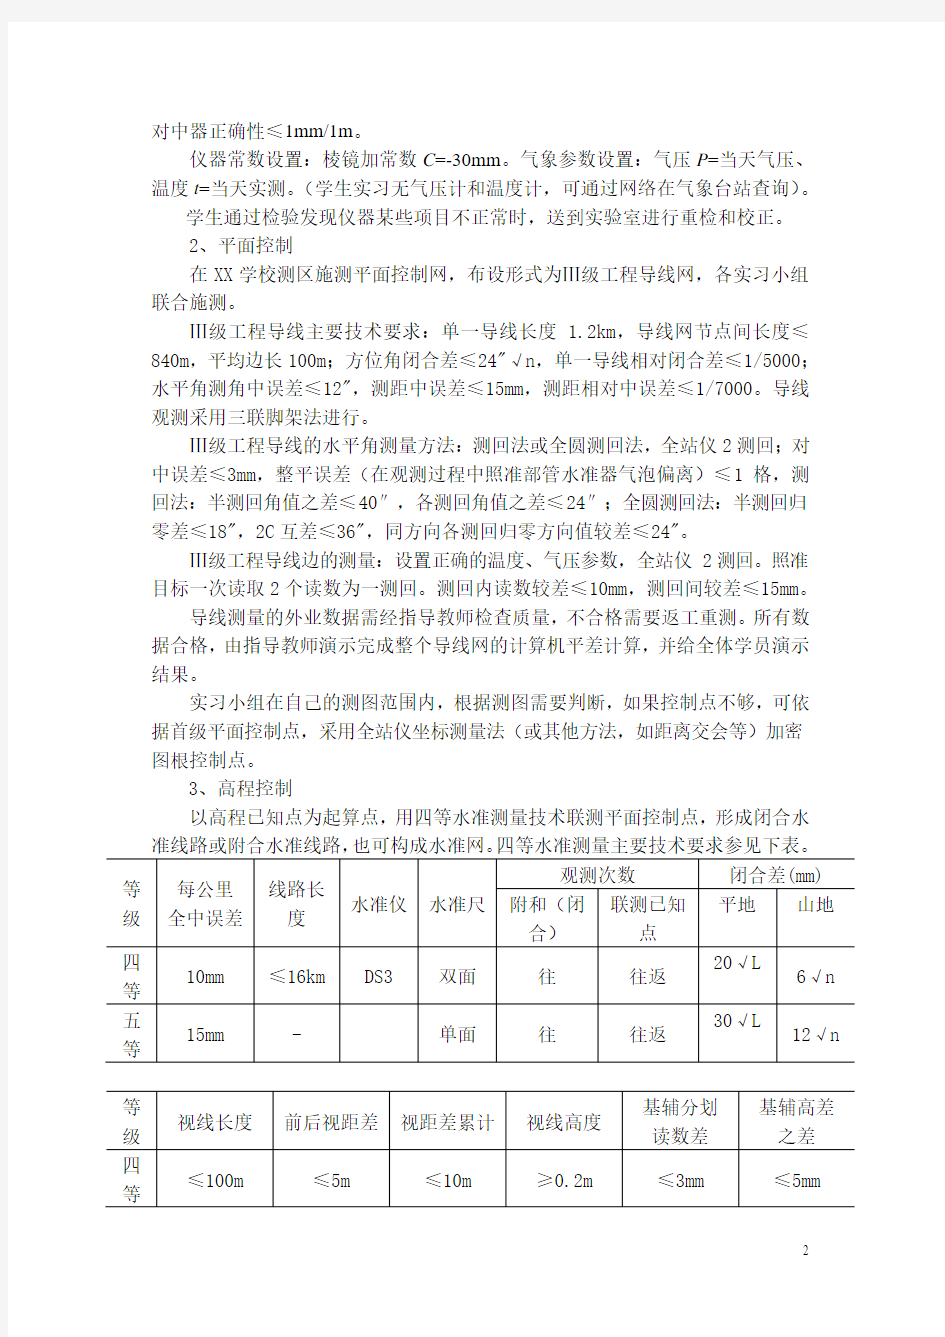 《土木工程测量》综合实习教学大纲-王晓明(修订)